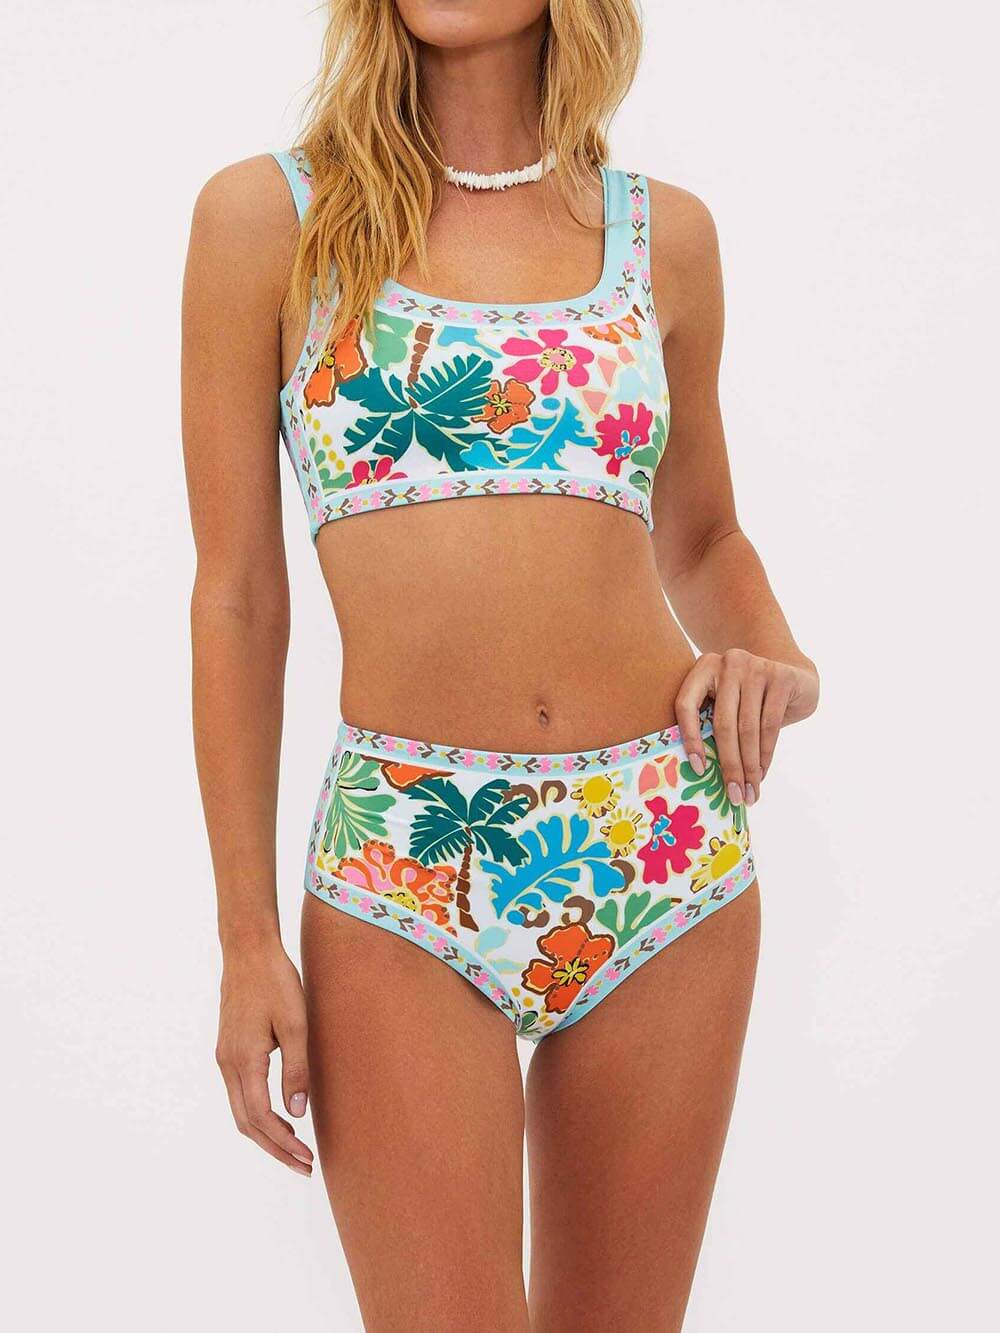 Einzigartiger Stretch-Bikini-Badeanzug mit Blumendruck